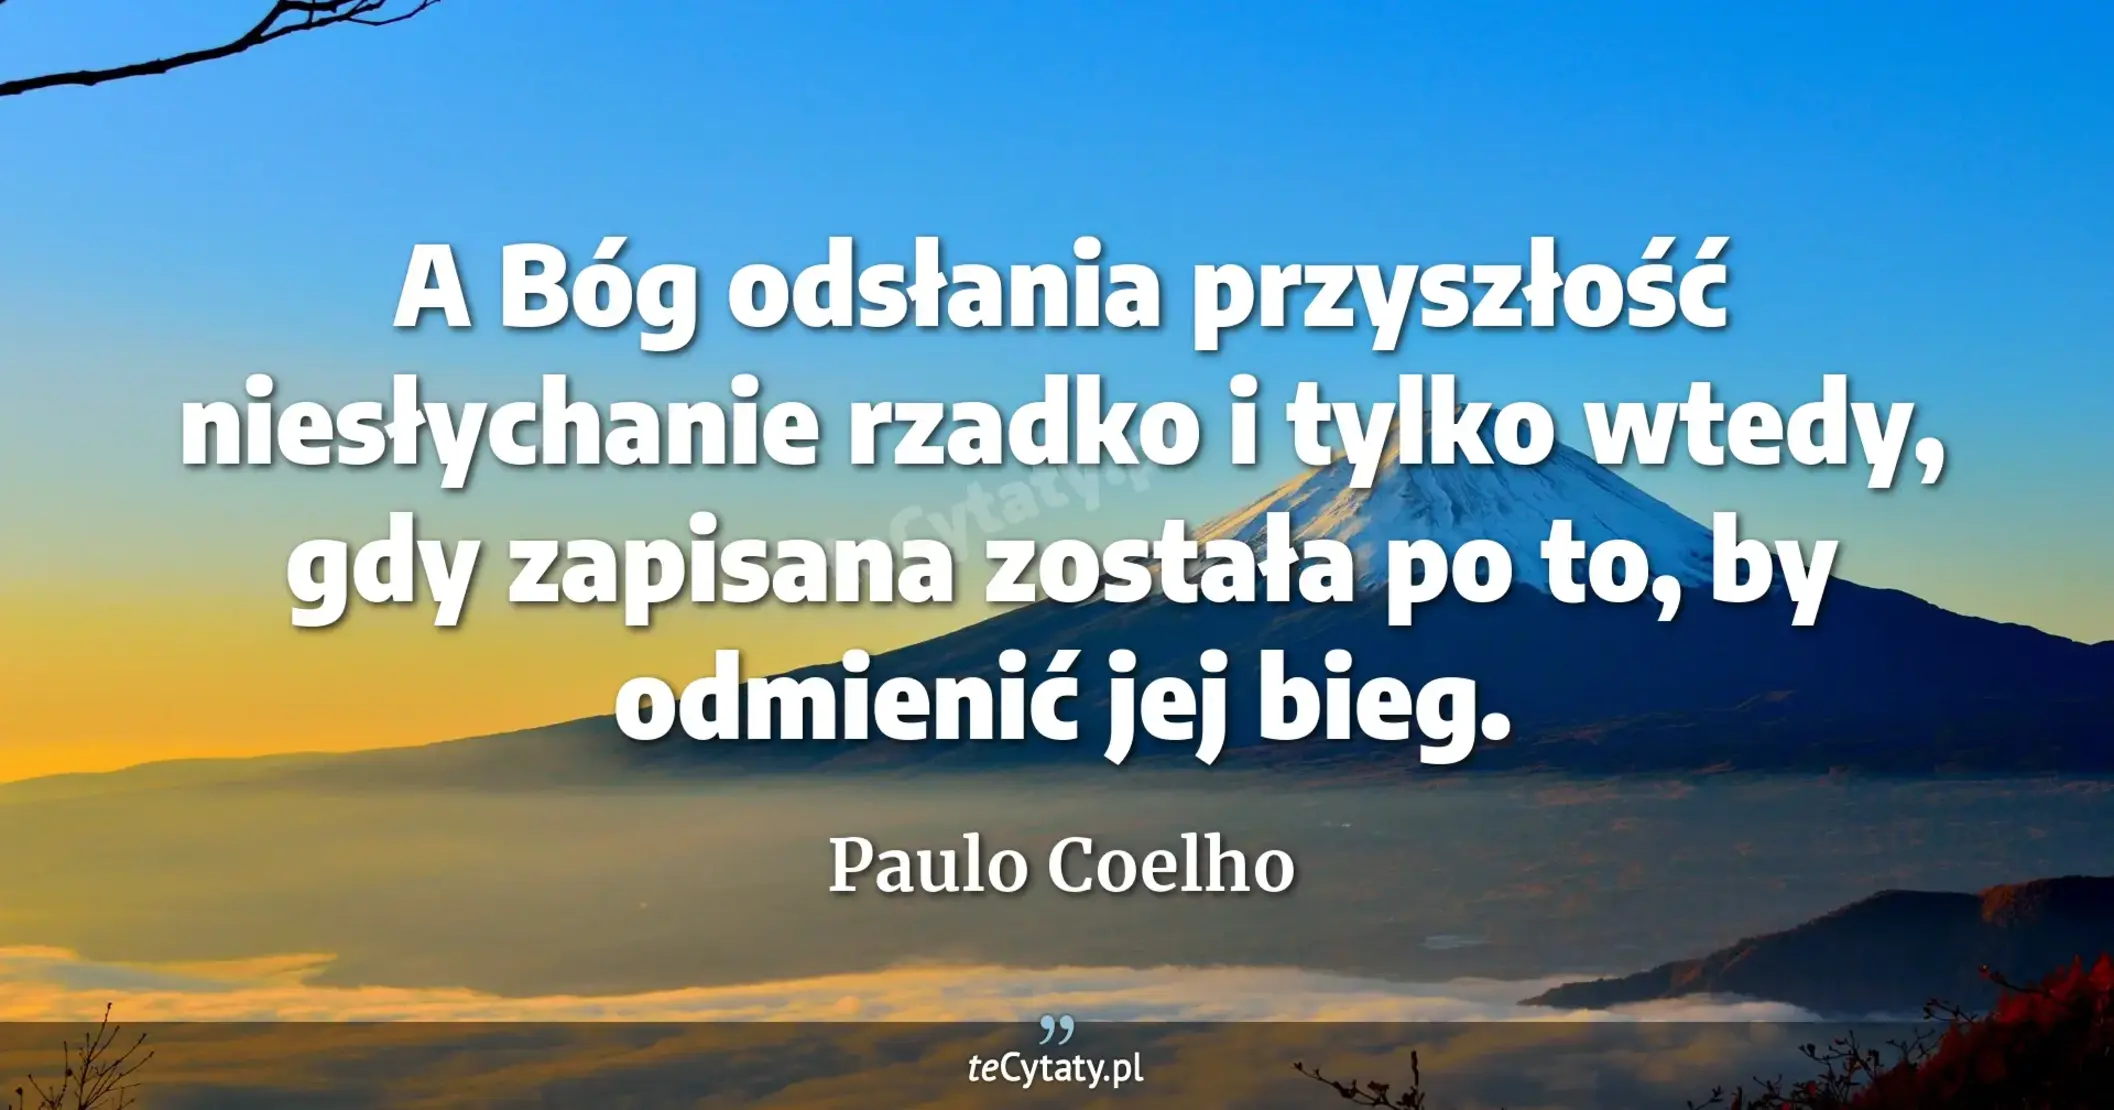 A Bóg odsłania przyszłość niesłychanie rzadko i tylko wtedy, gdy zapisana została po to, by odmienić jej bieg. - Paulo Coelho